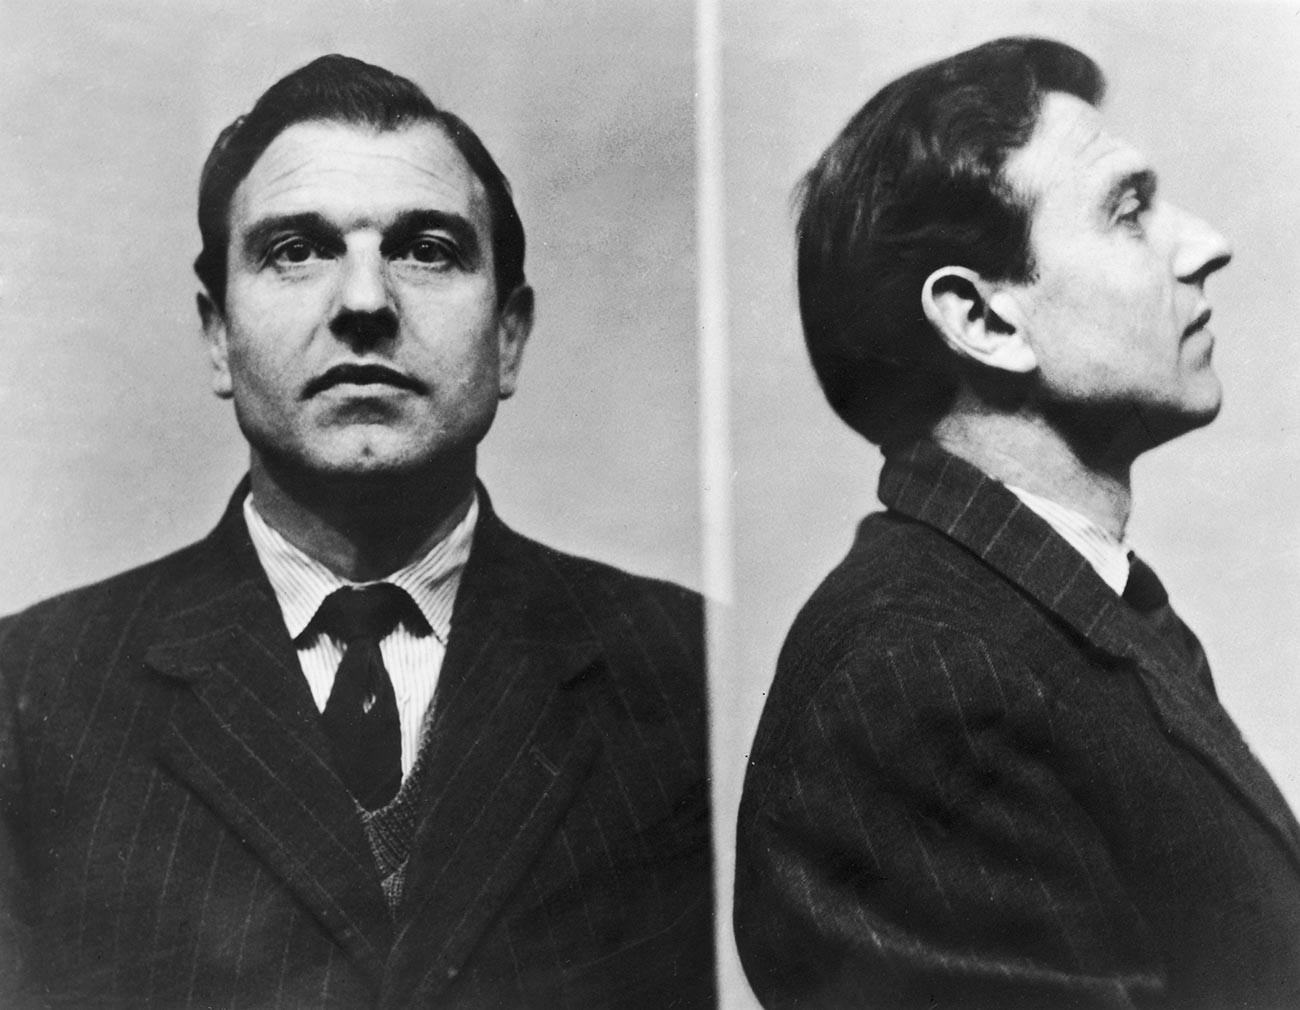 Fotografias do fichamento de George Blake na prisão, em 1961.